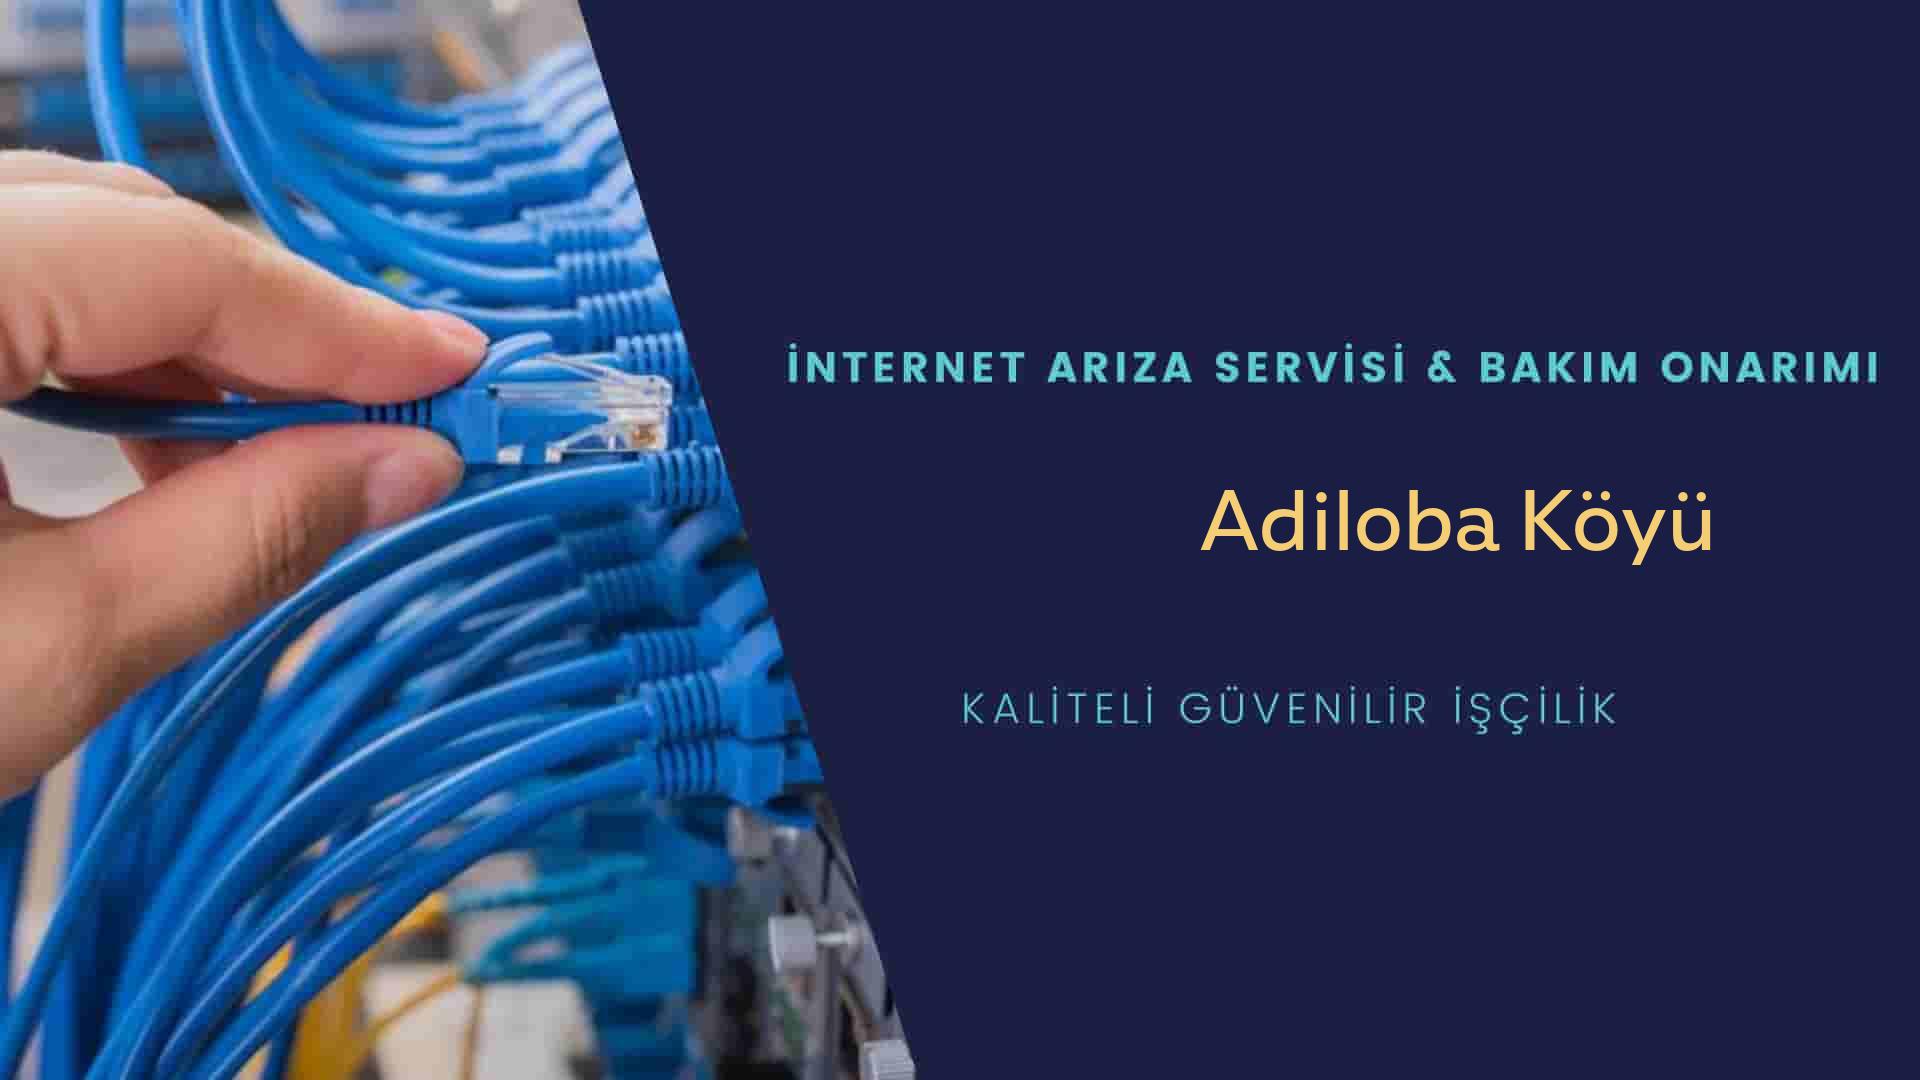 Adiloba Köyü internet kablosu çekimi yapan yerler veya elektrikçiler mi? arıyorsunuz doğru yerdesiniz o zaman sizlere 7/24 yardımcı olacak profesyonel ustalarımız bir telefon kadar yakındır size.